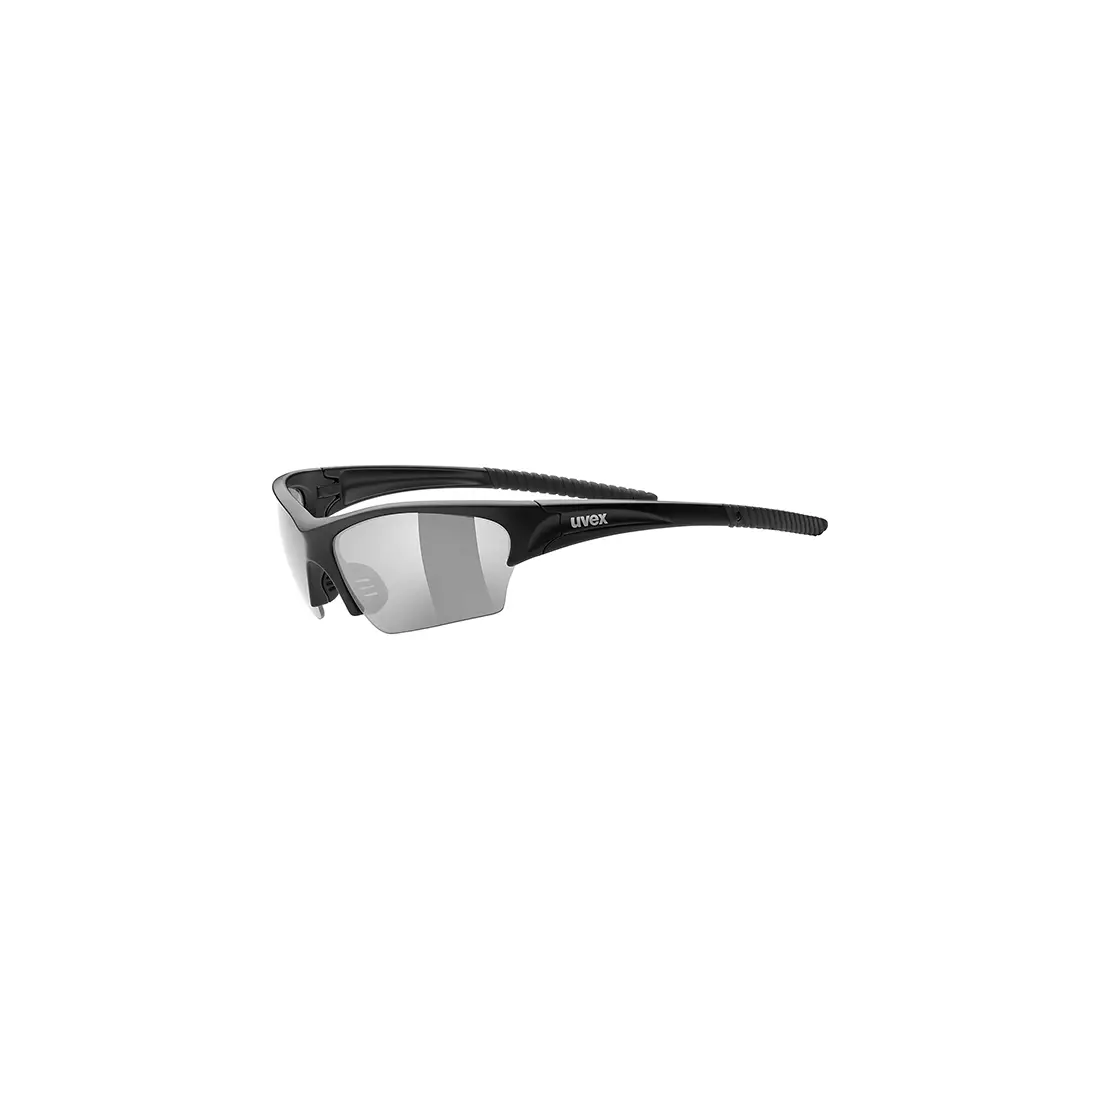 Kerékpár / sport szemüveg Uvex Sunsation 53/0/606/2210/UNI SS19